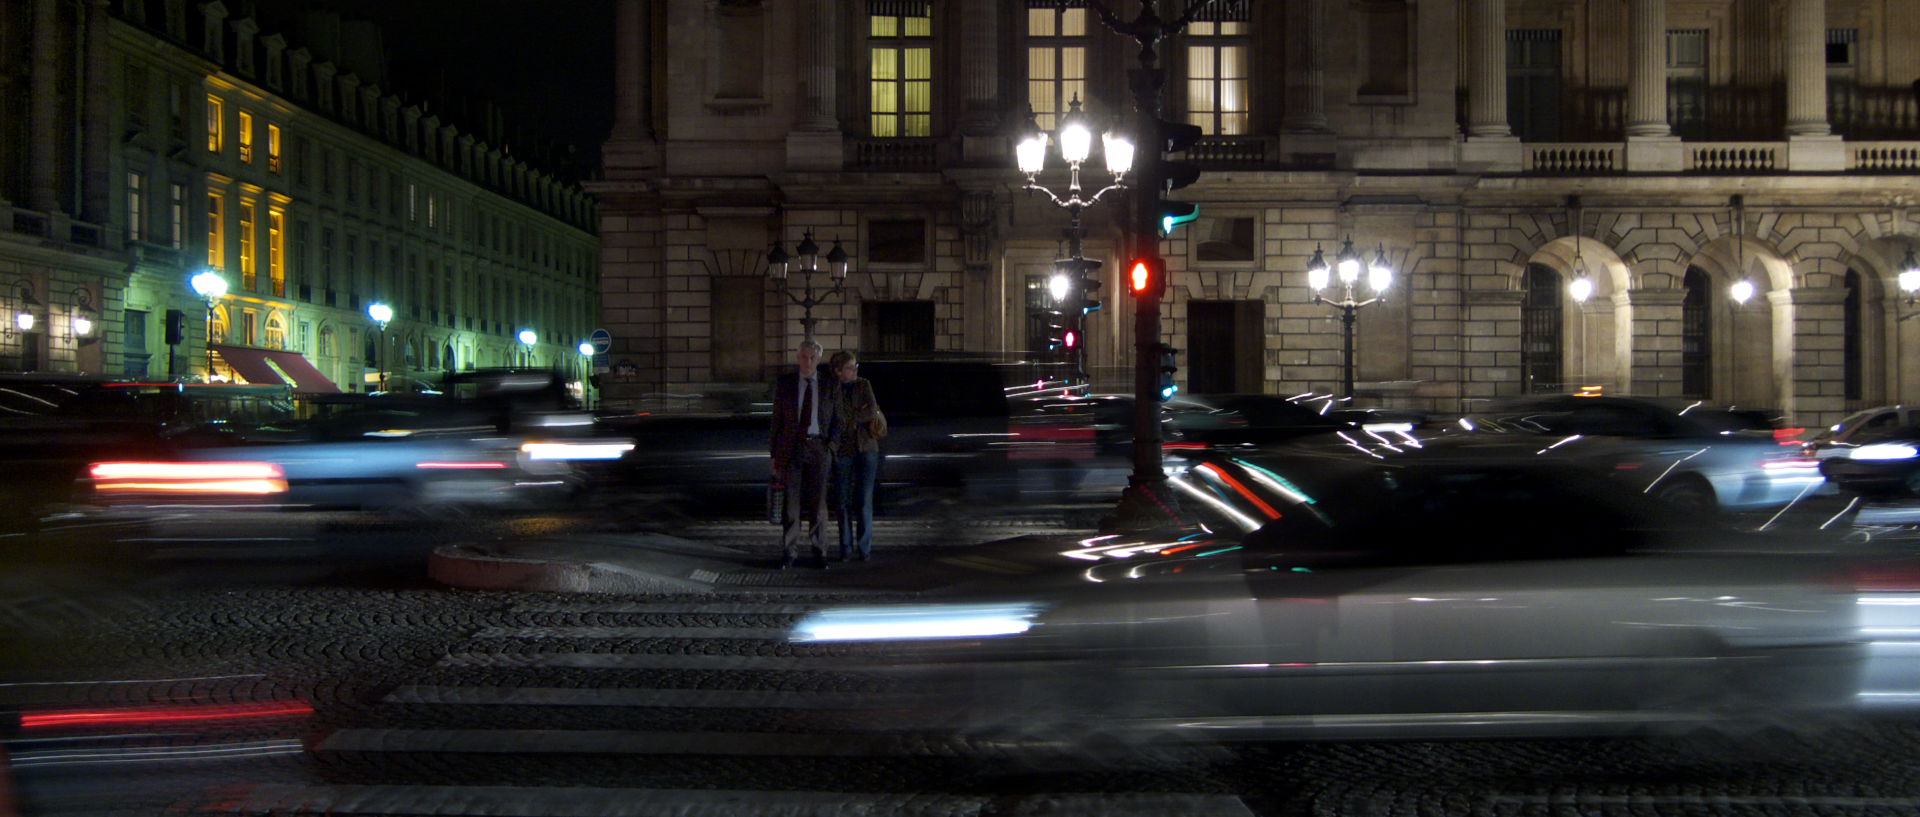 Photo de scène de rue, Paris, place de la Concorde.